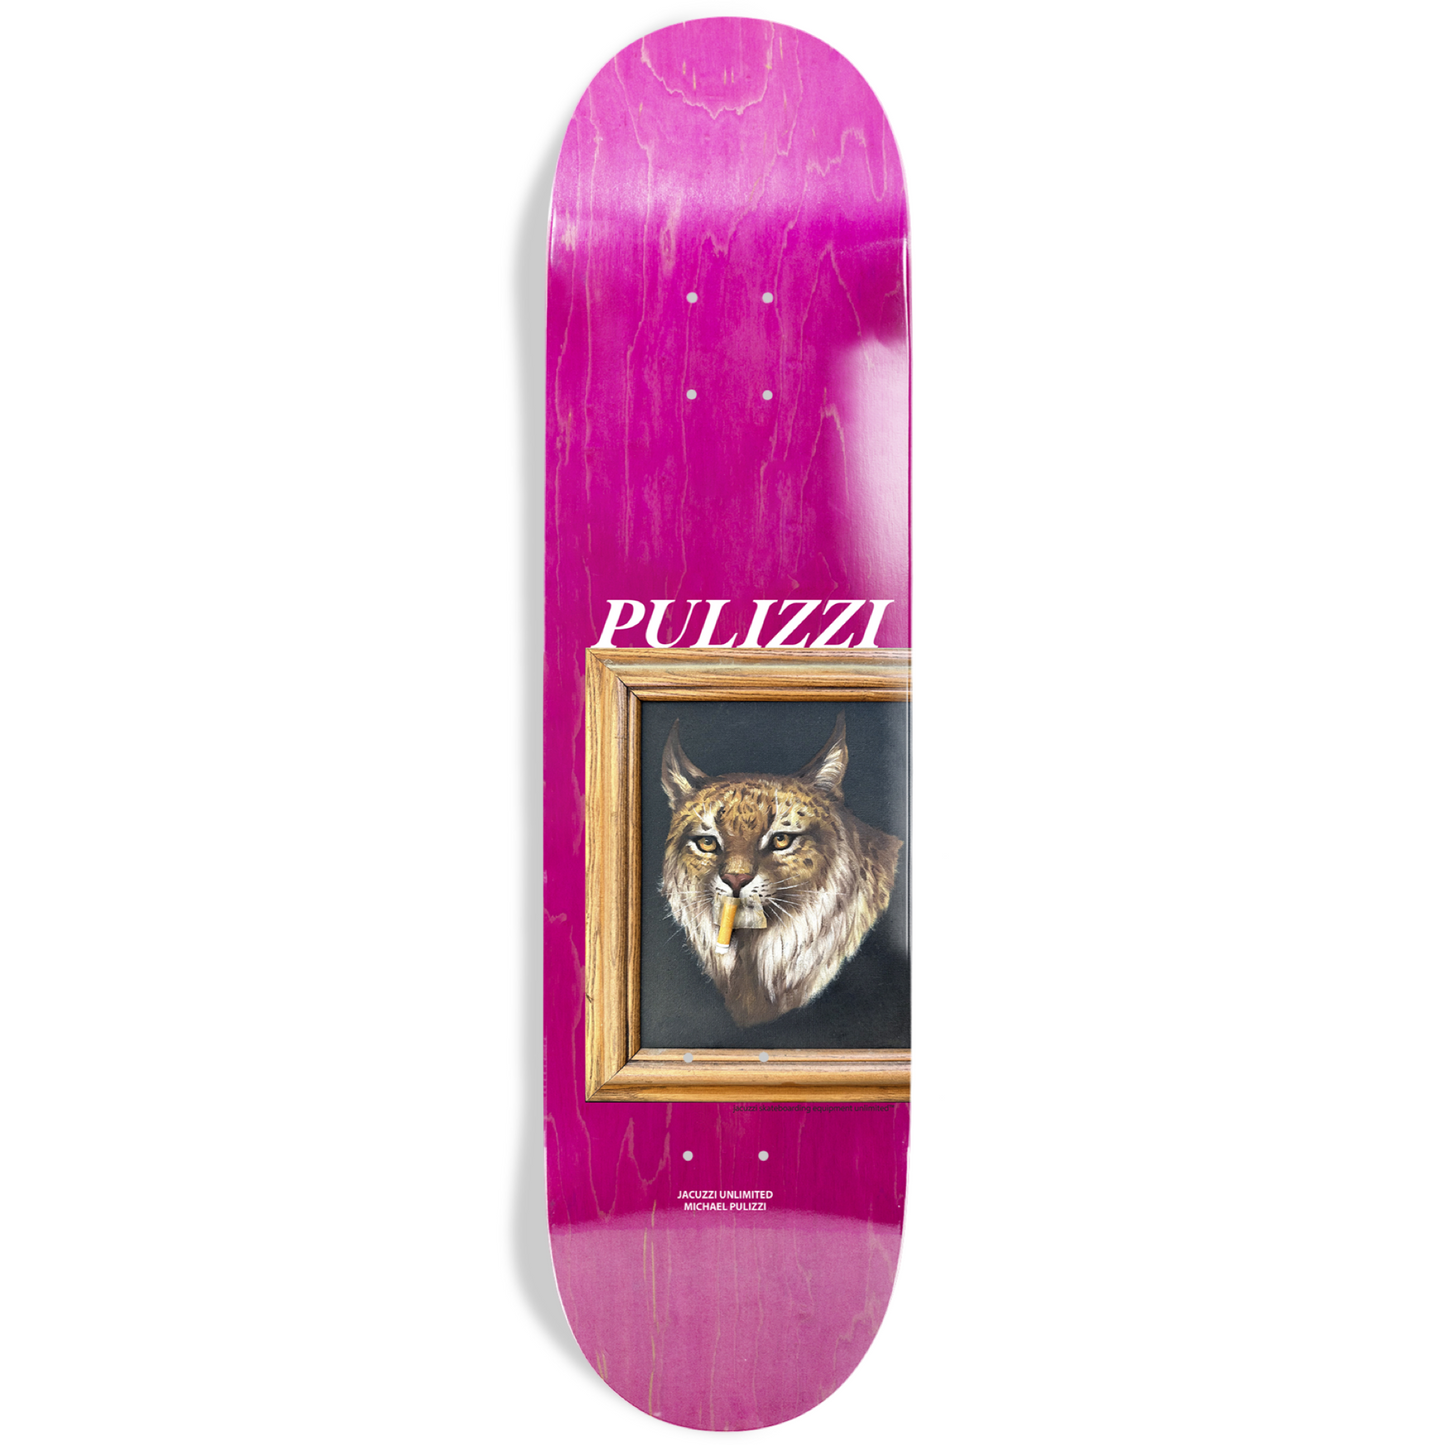 Jacuzzi Unlimited - Michael Pulizzi ‘Bobcat’ 8.375" Deck